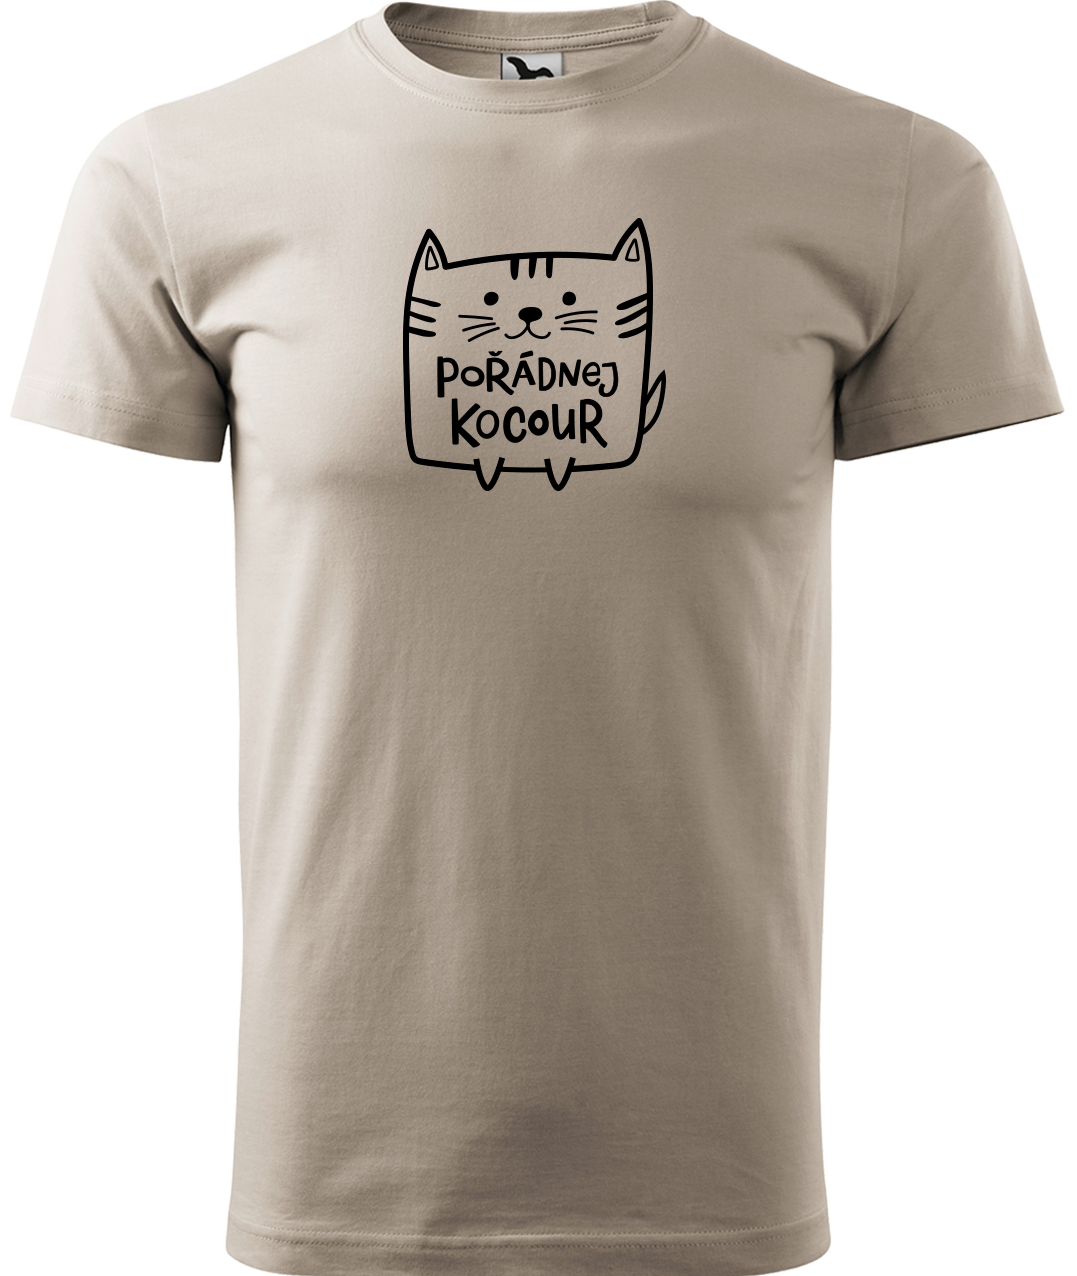 Pánské tričko s kočkou - Pořádnej kocour Velikost: 3XL, Barva: Ledově šedá (51)